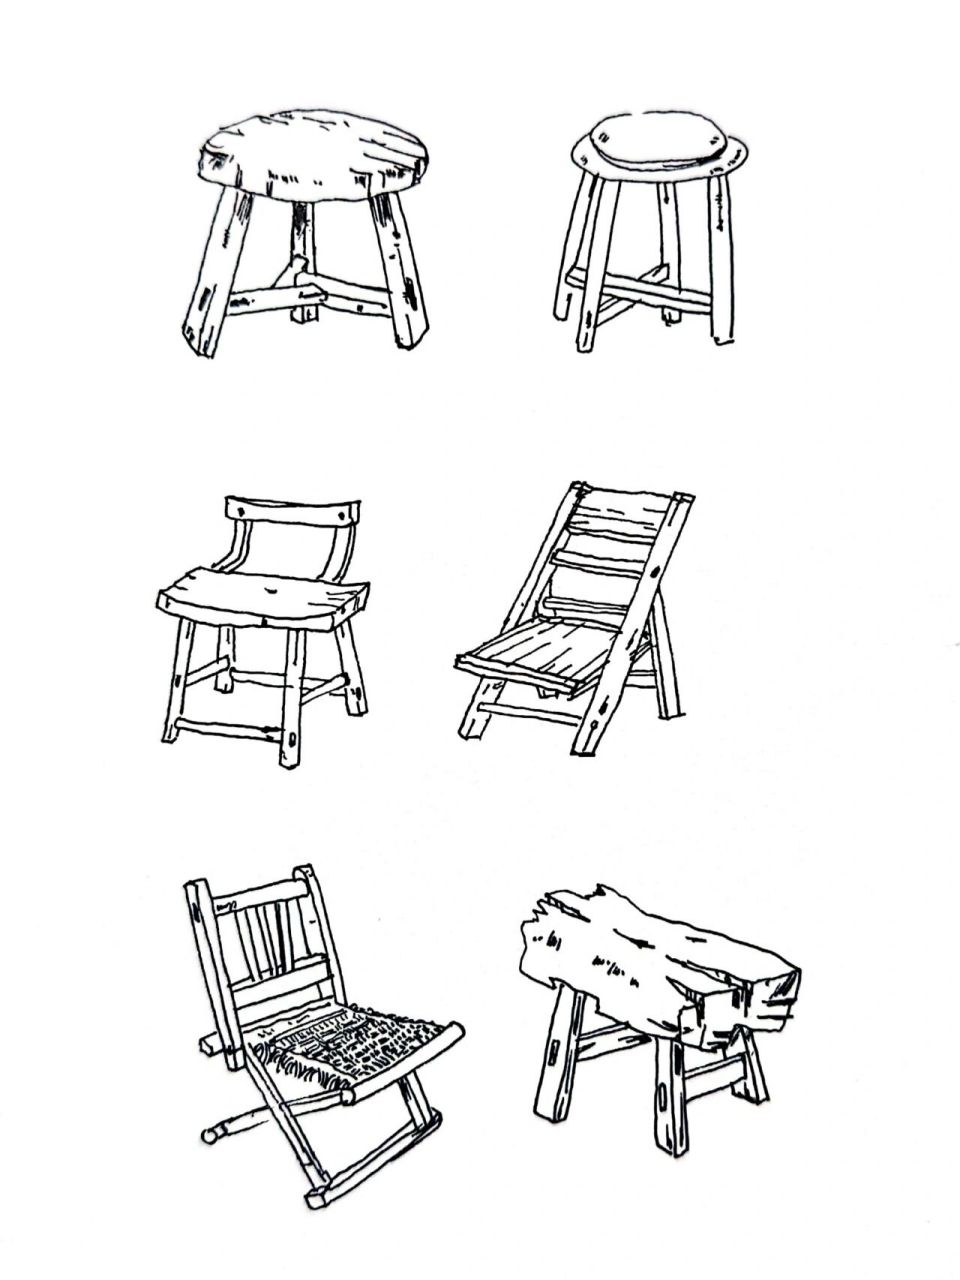 「364」各种椅子凳子速写,简单又复杂 临摹赖老师钢笔画作品透视关系